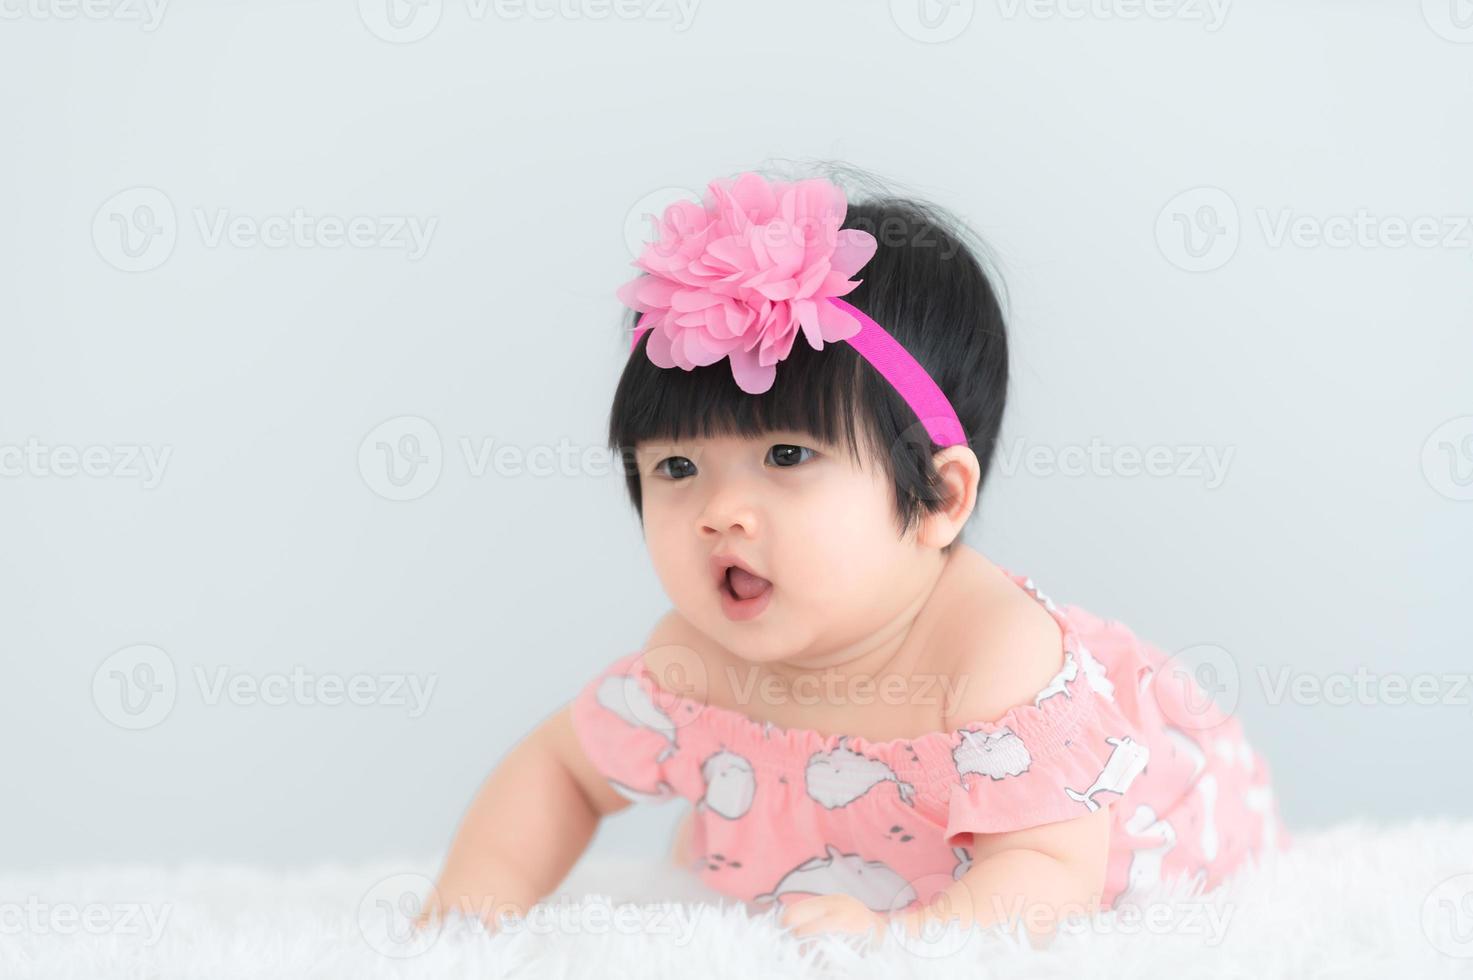 retrato de bebê asiático fofo no tapete branco, sorriso recém-nascido para tirar uma foto